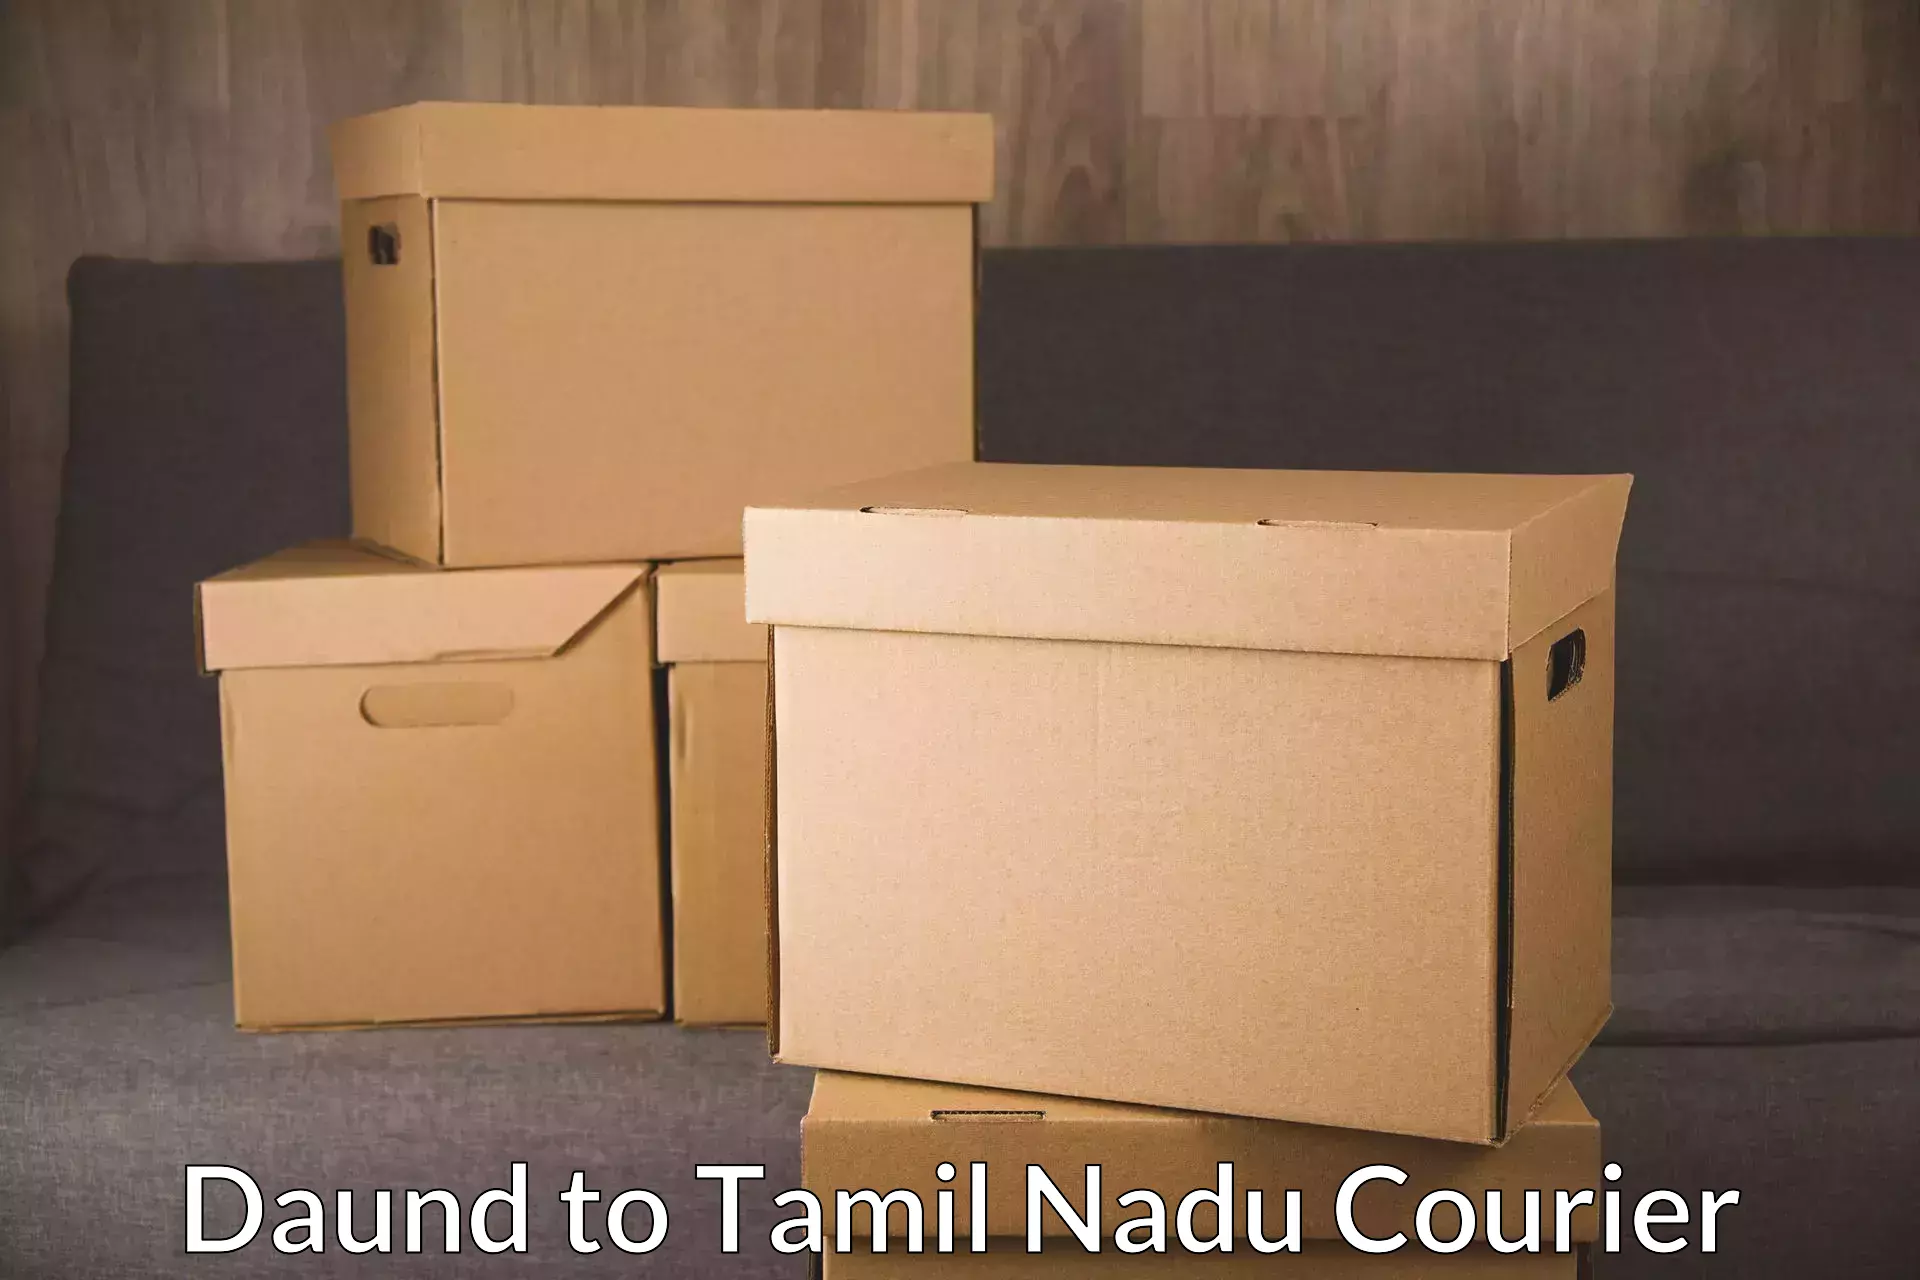 Multi-city courier Daund to Thiruvadanai